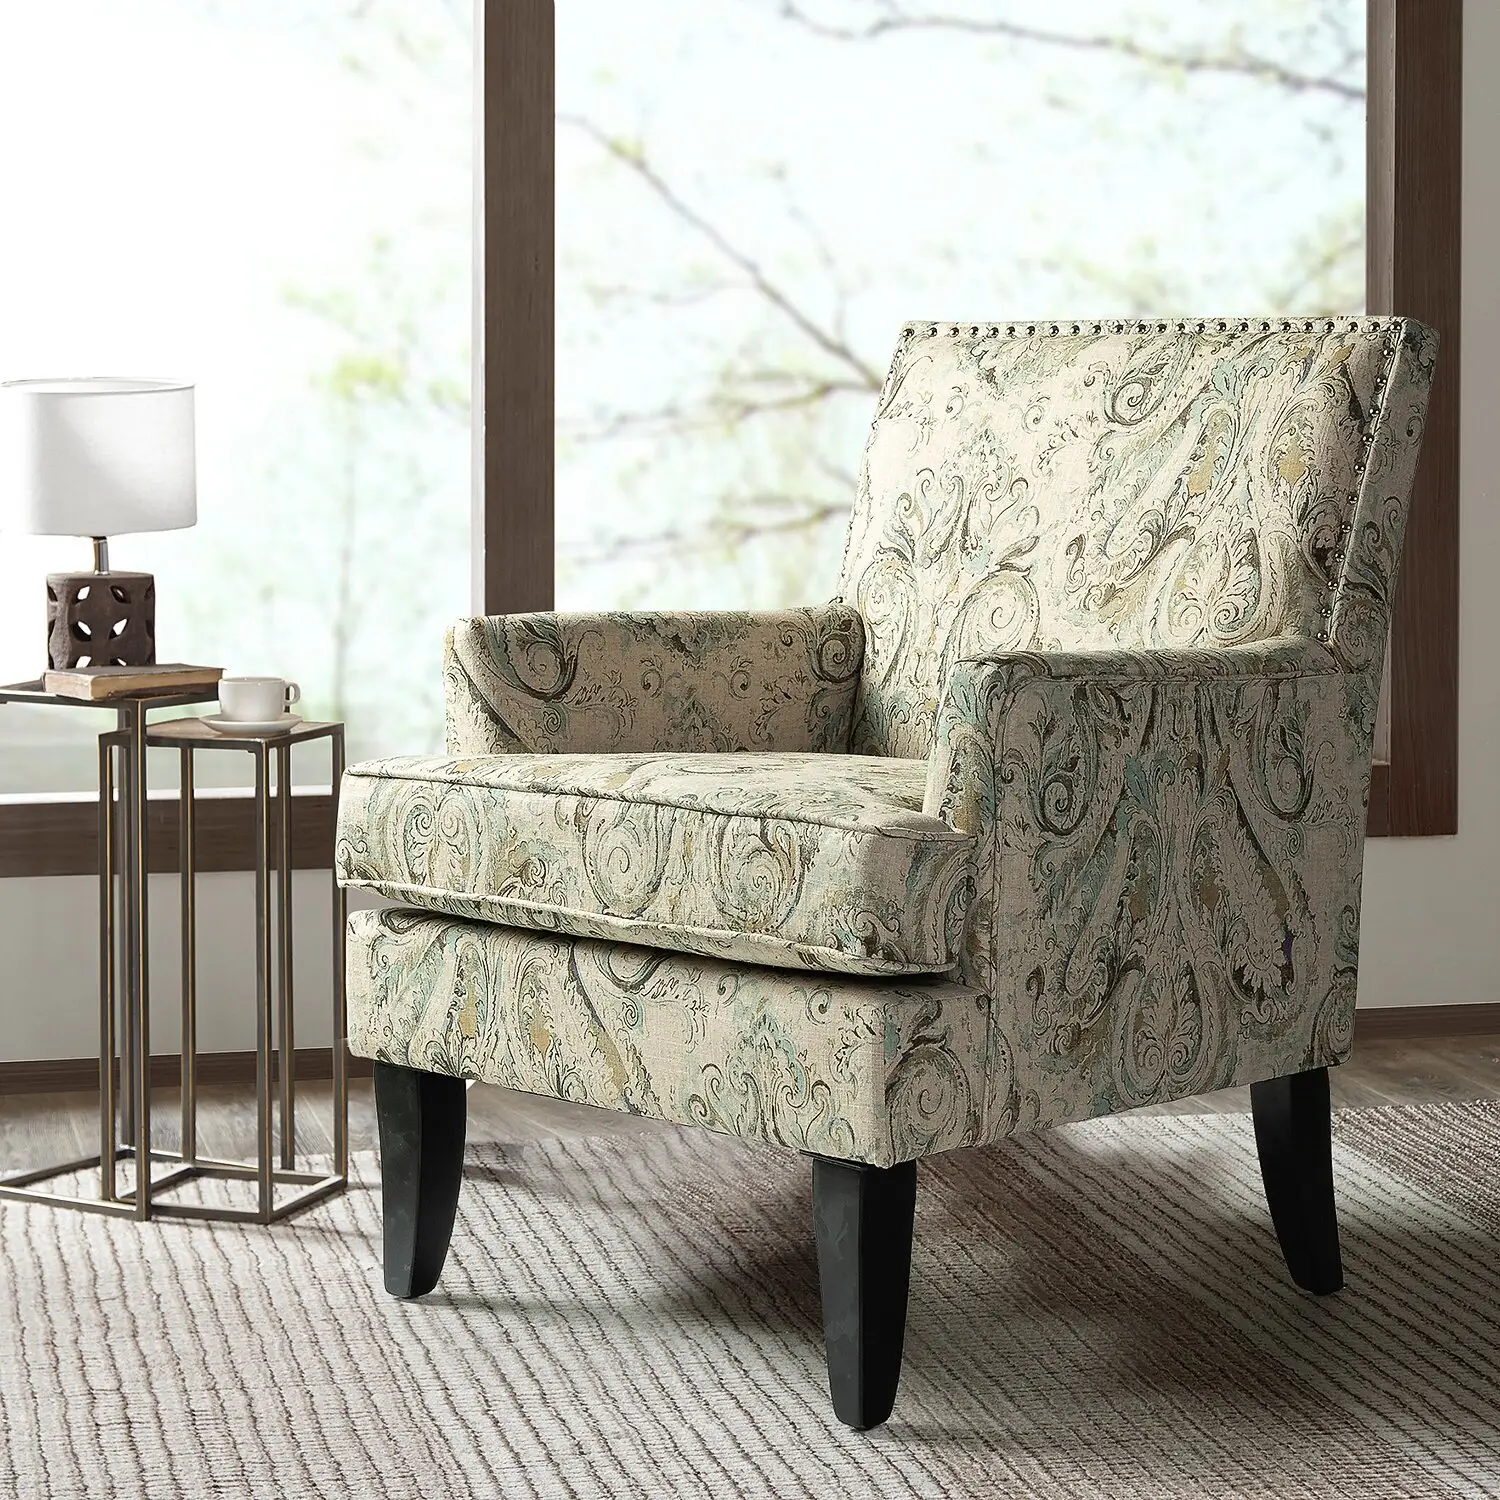 Poltrona contemporânea clássica moderna da cadeira do clube do tecido com padrão vintage